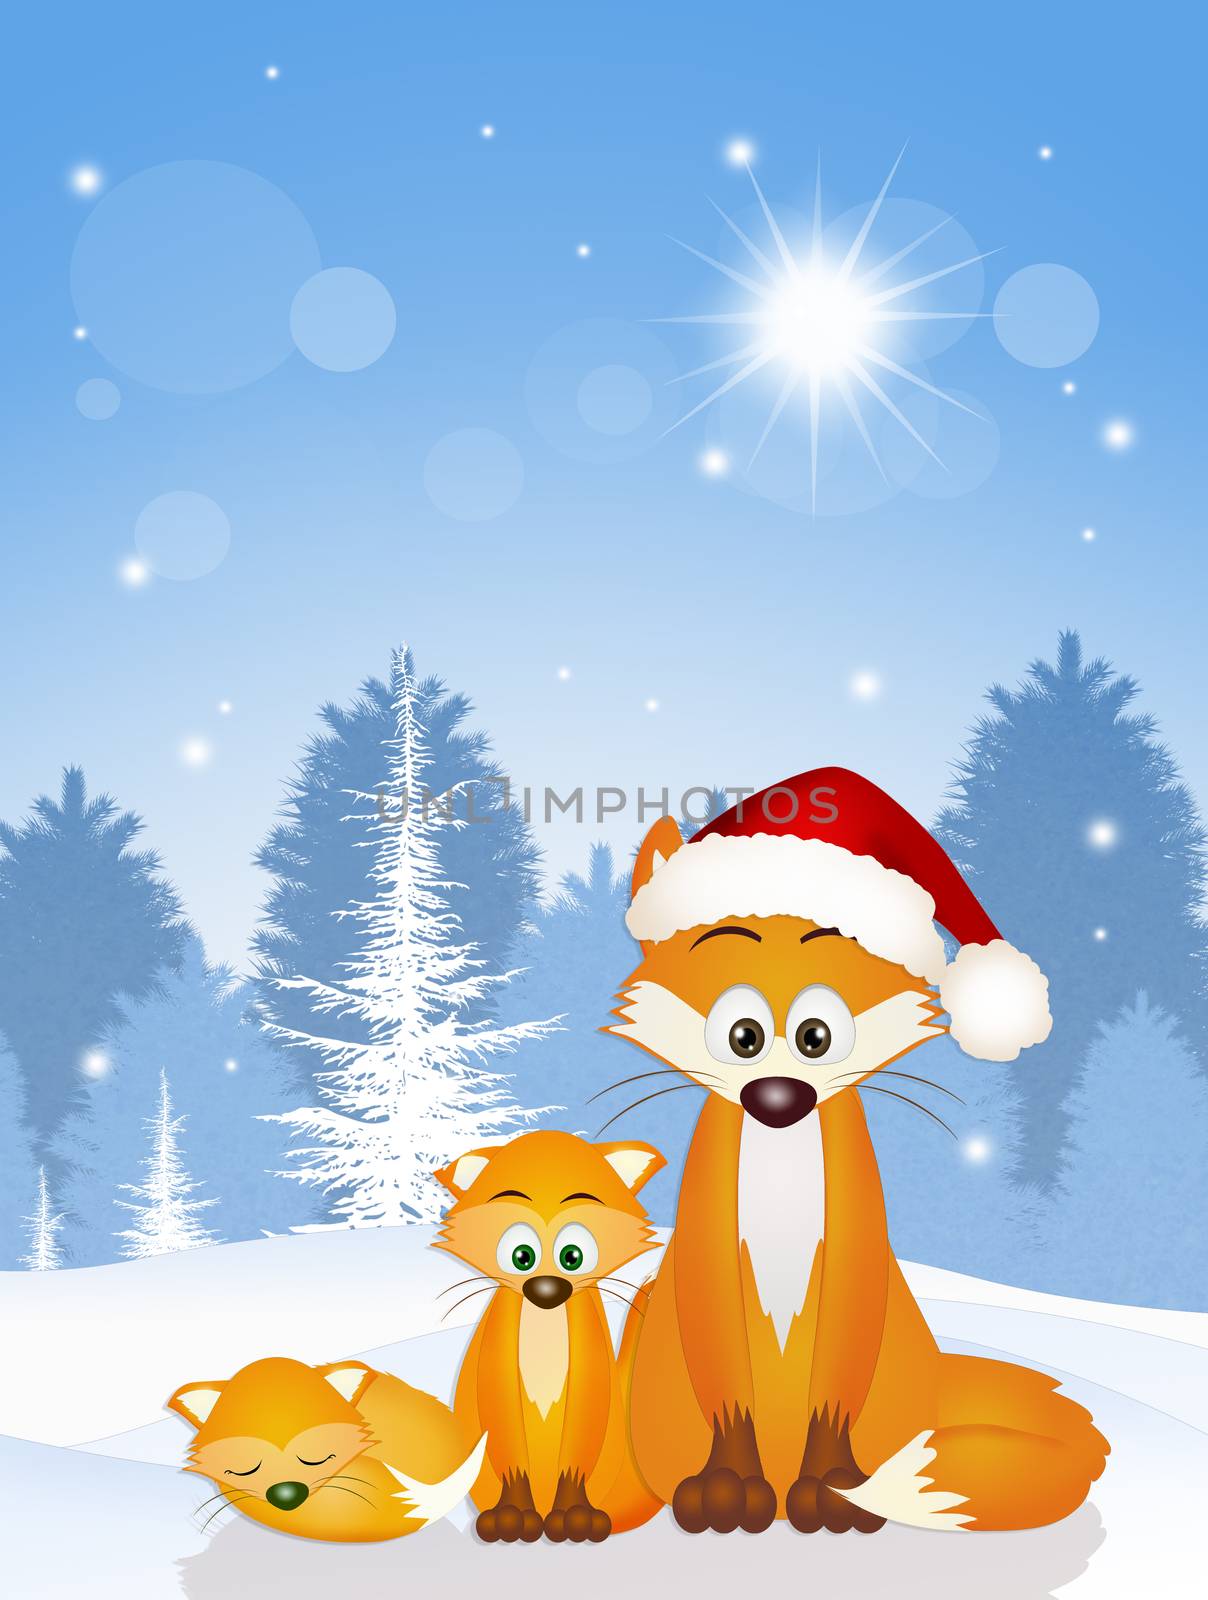 red fox at Christmas by adrenalina